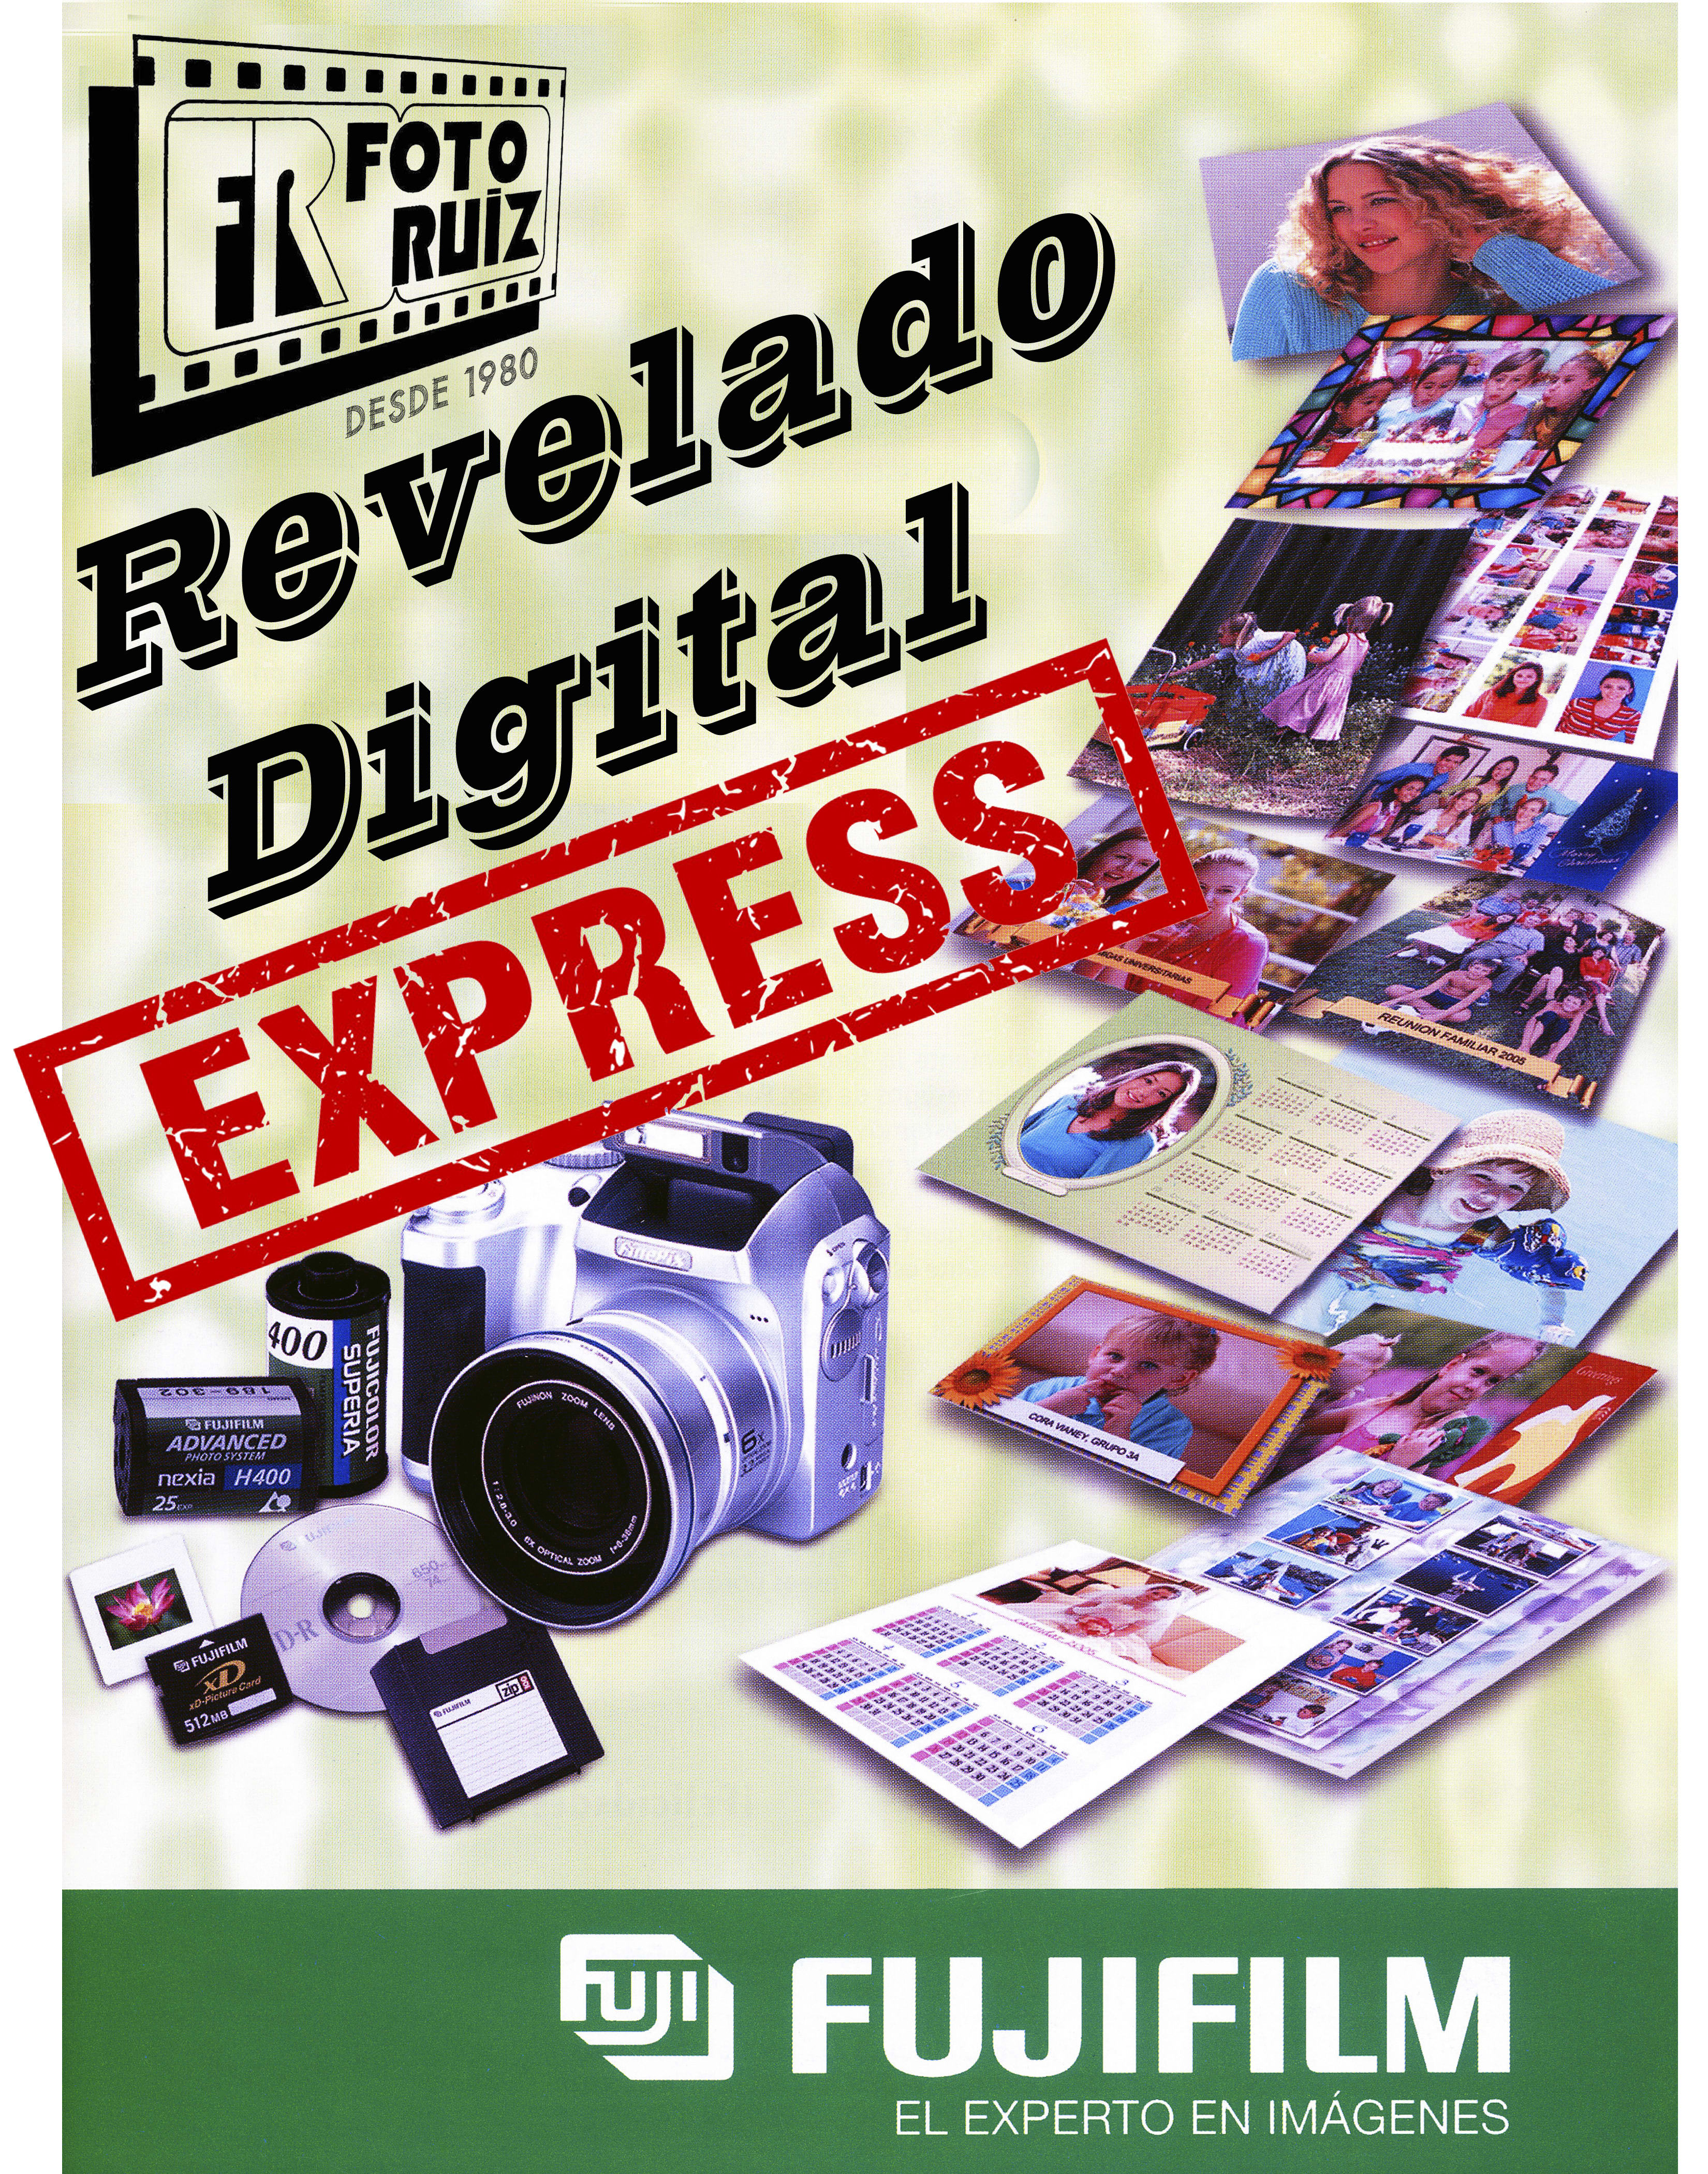 Revelado e impresión digital - Tienda de fotografía